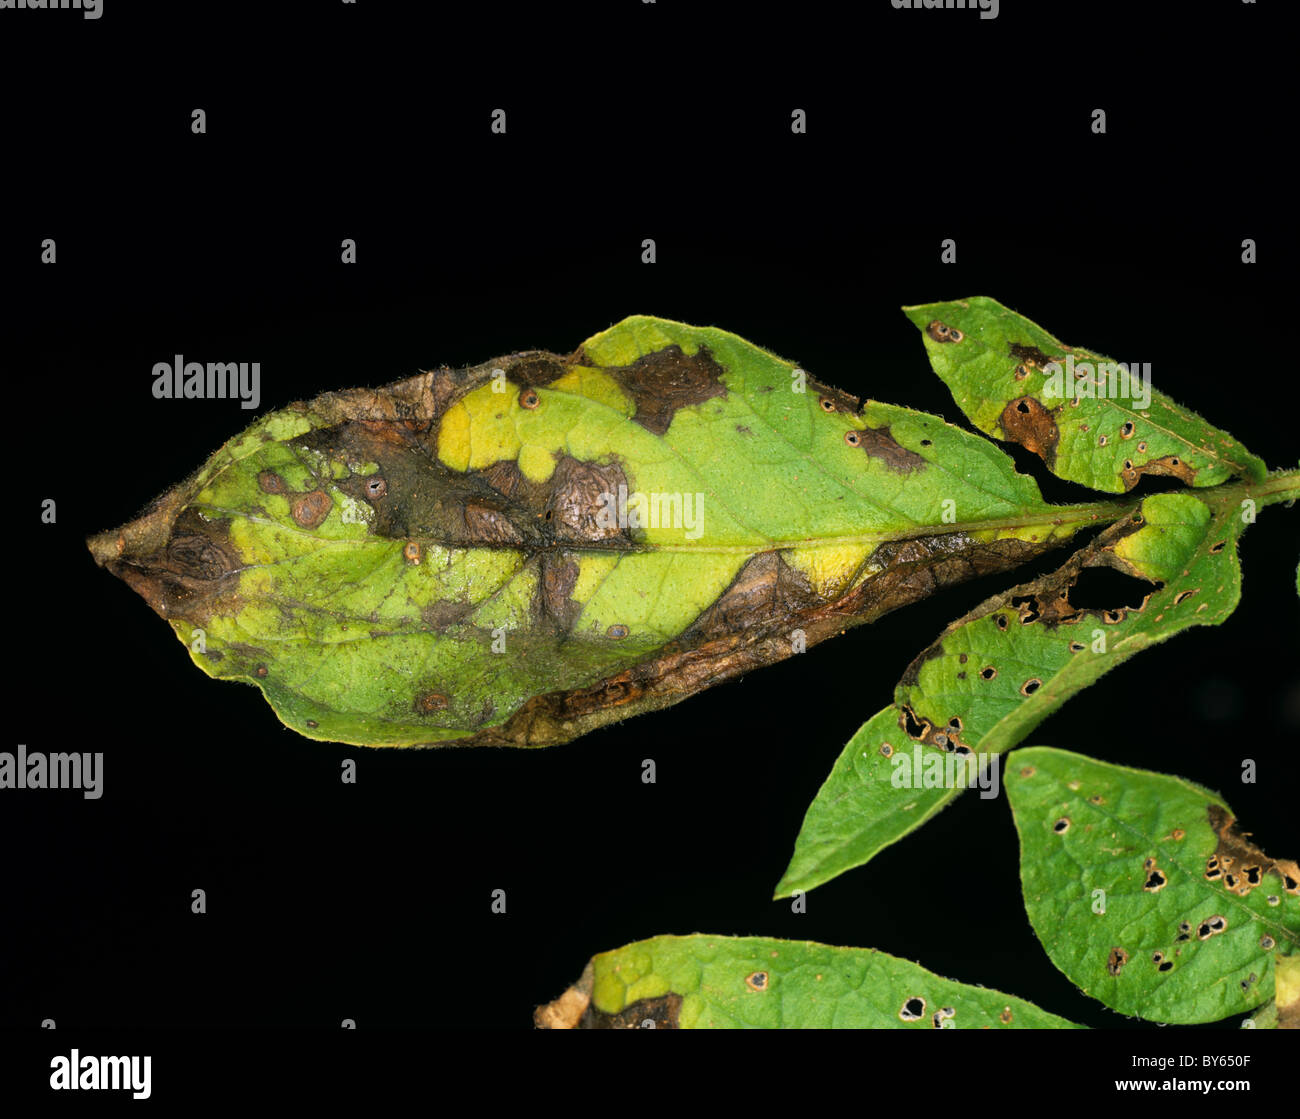 Potato early blight (Alternaria alternata) lesions on a potato leaf Stock Photo